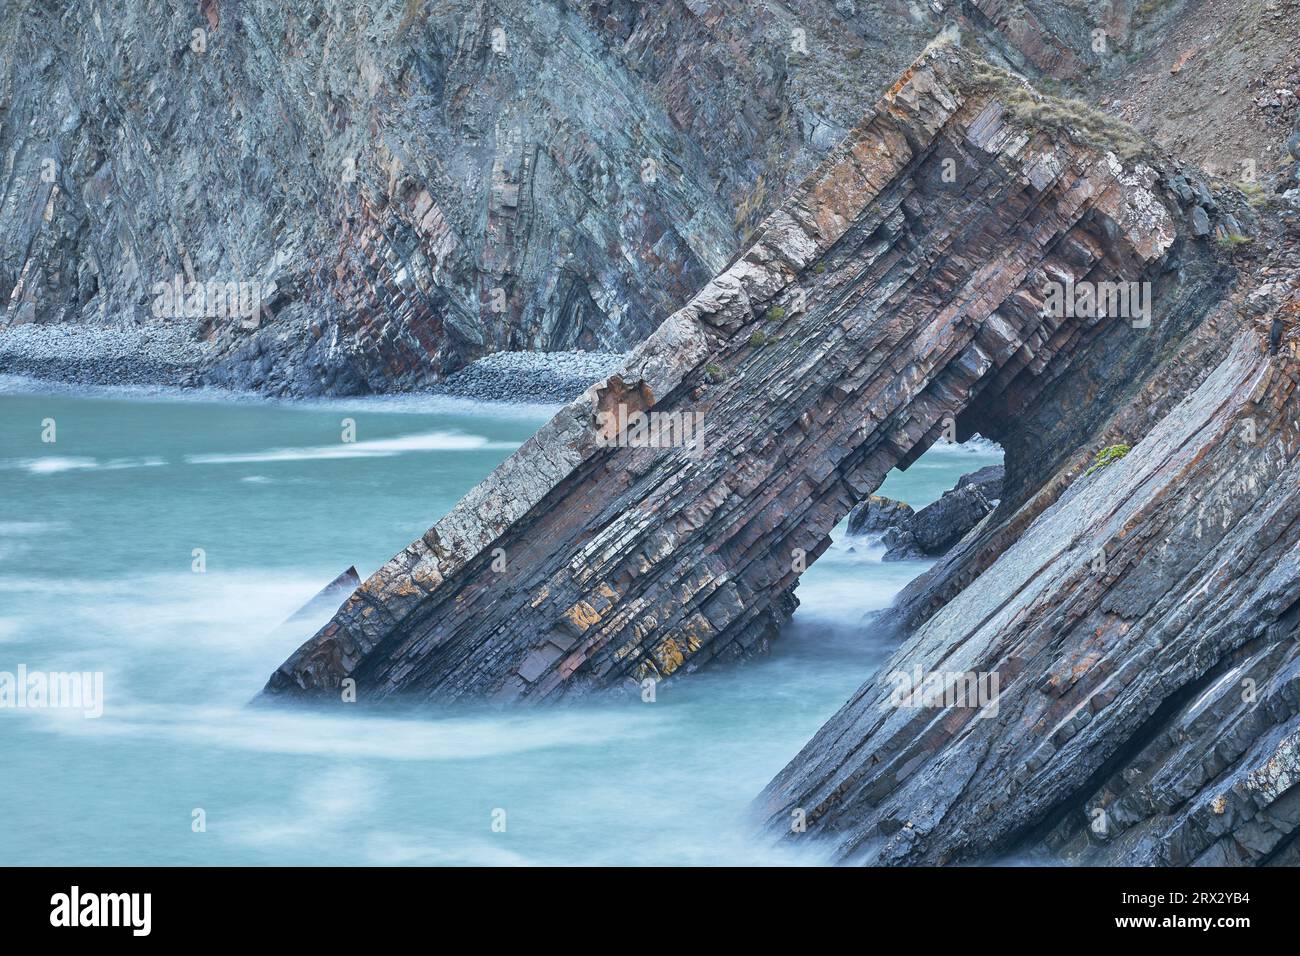 Vue au crépuscule d'une arche rocheuse formée de couches de roches sédimentaires, à Hartland Quay, sur la côte atlantique du Devon, Angleterre, Royaume-Uni, Europe Banque D'Images